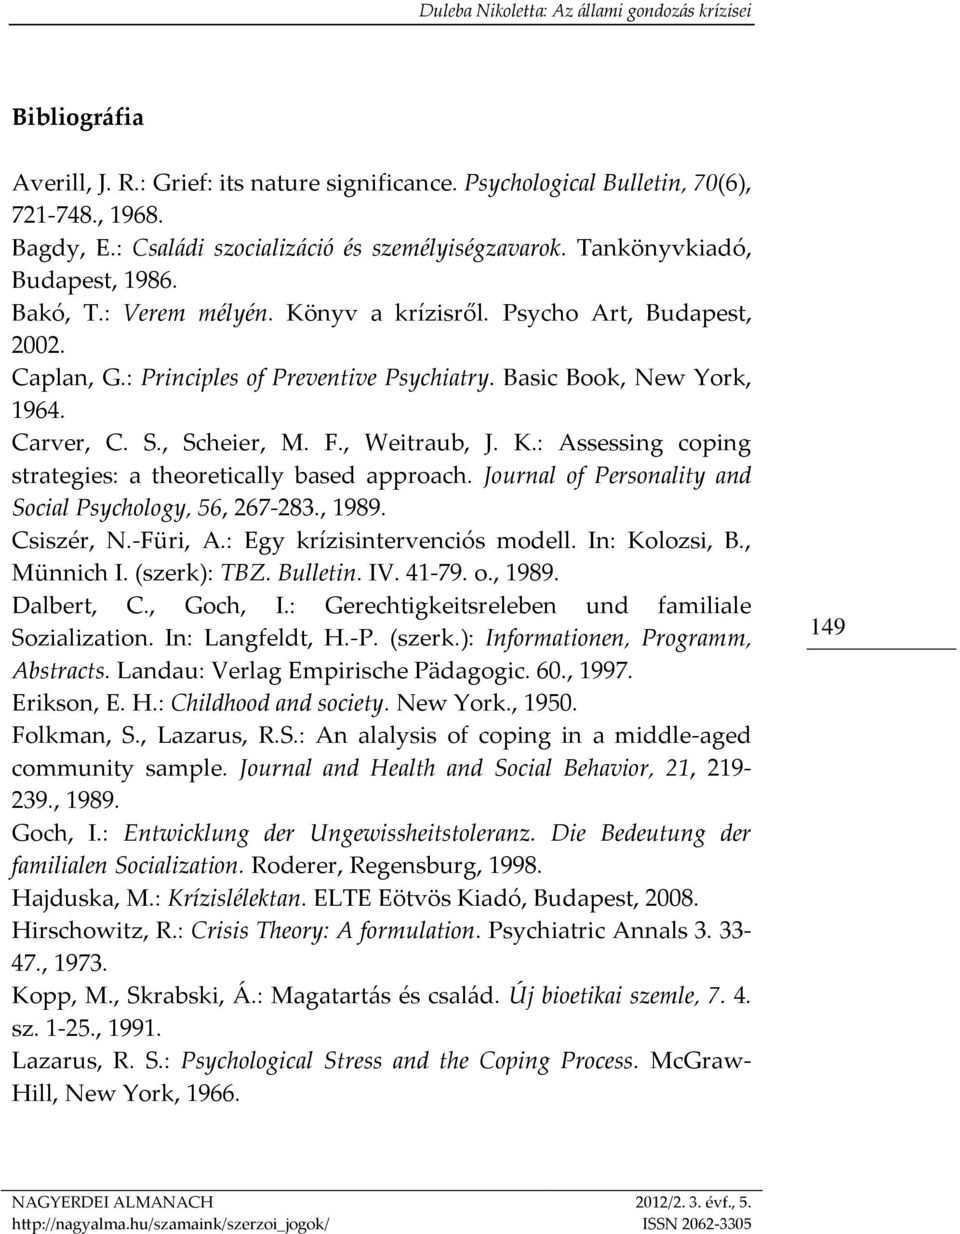 Journal of Personality and Social Psychology, 56, 267-283., 1989. Csiszér, N.-Füri, A.: Egy krízisintervenciós modell. In: Kolozsi, B., Münnich I. (szerk): TBZ. Bulletin. IV. 41-79. o., 1989. Dalbert, C.